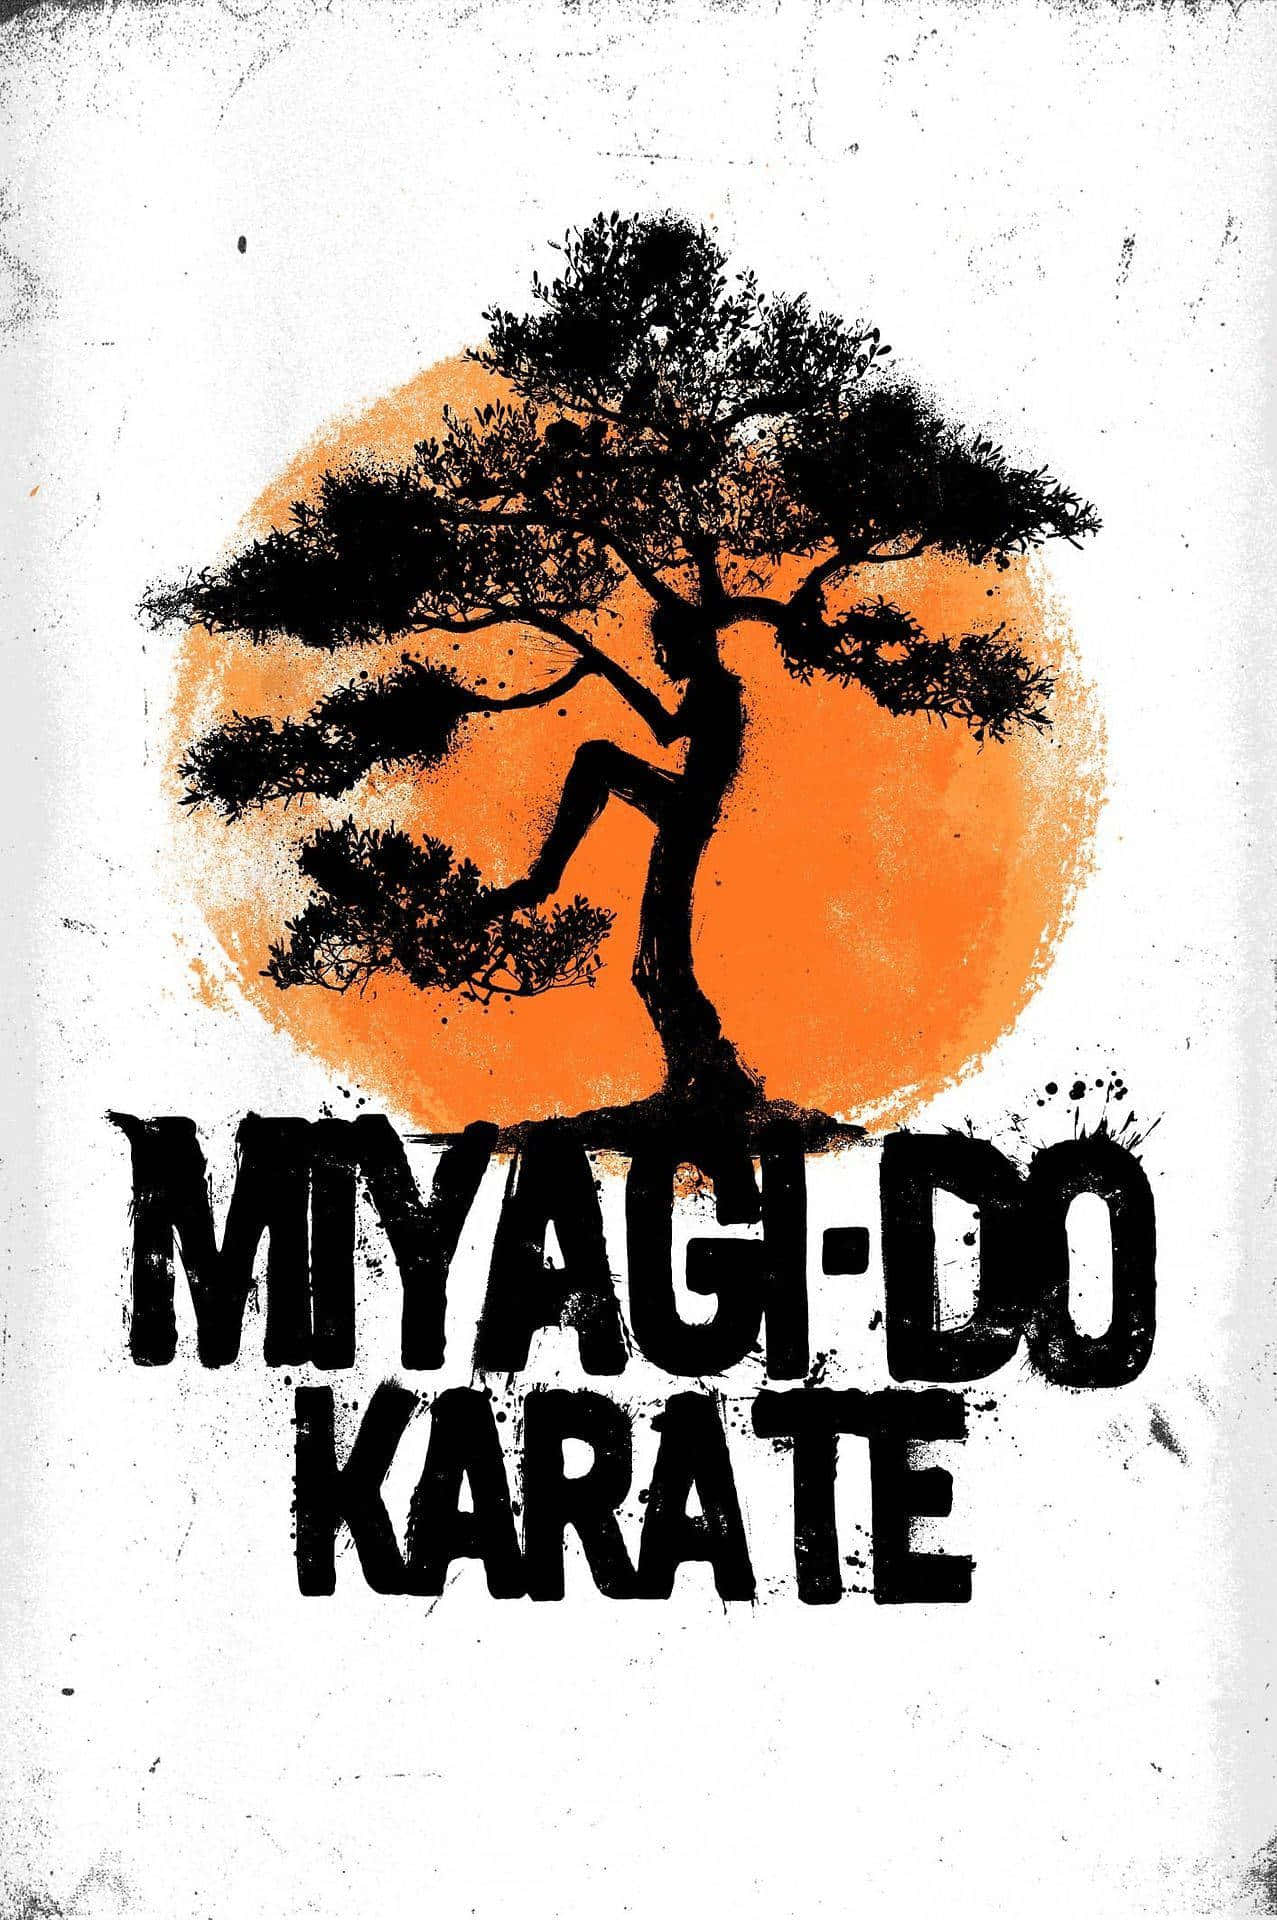 karate symbol wallpaper